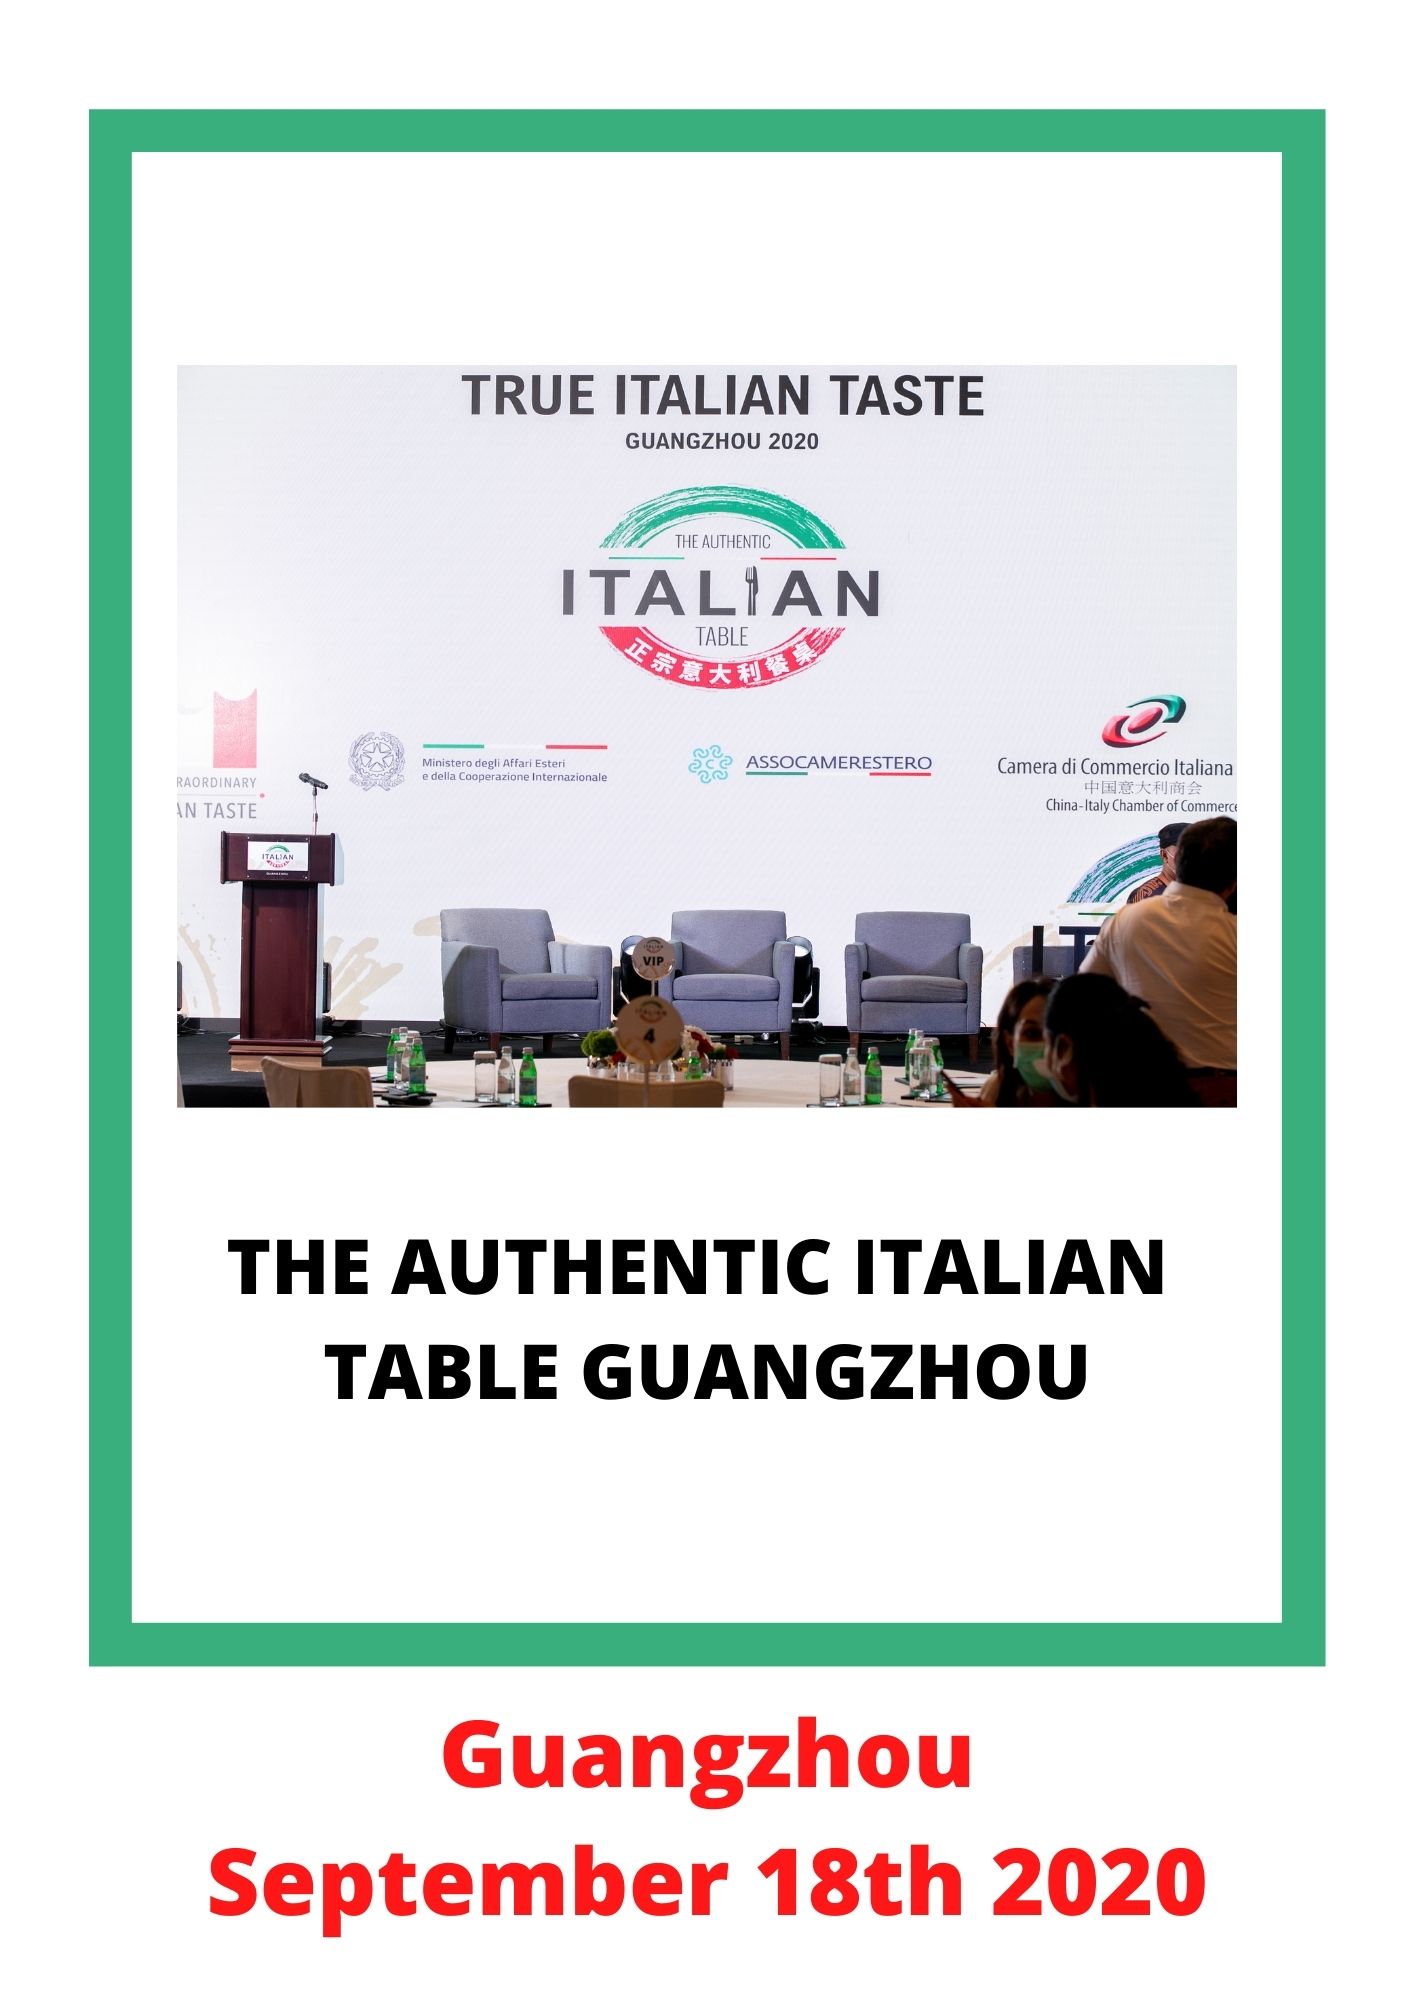 True Italian Taste - L'authenticité du produit italien dans le monde -  Promozione di cibo e vino italiano in Svizzera